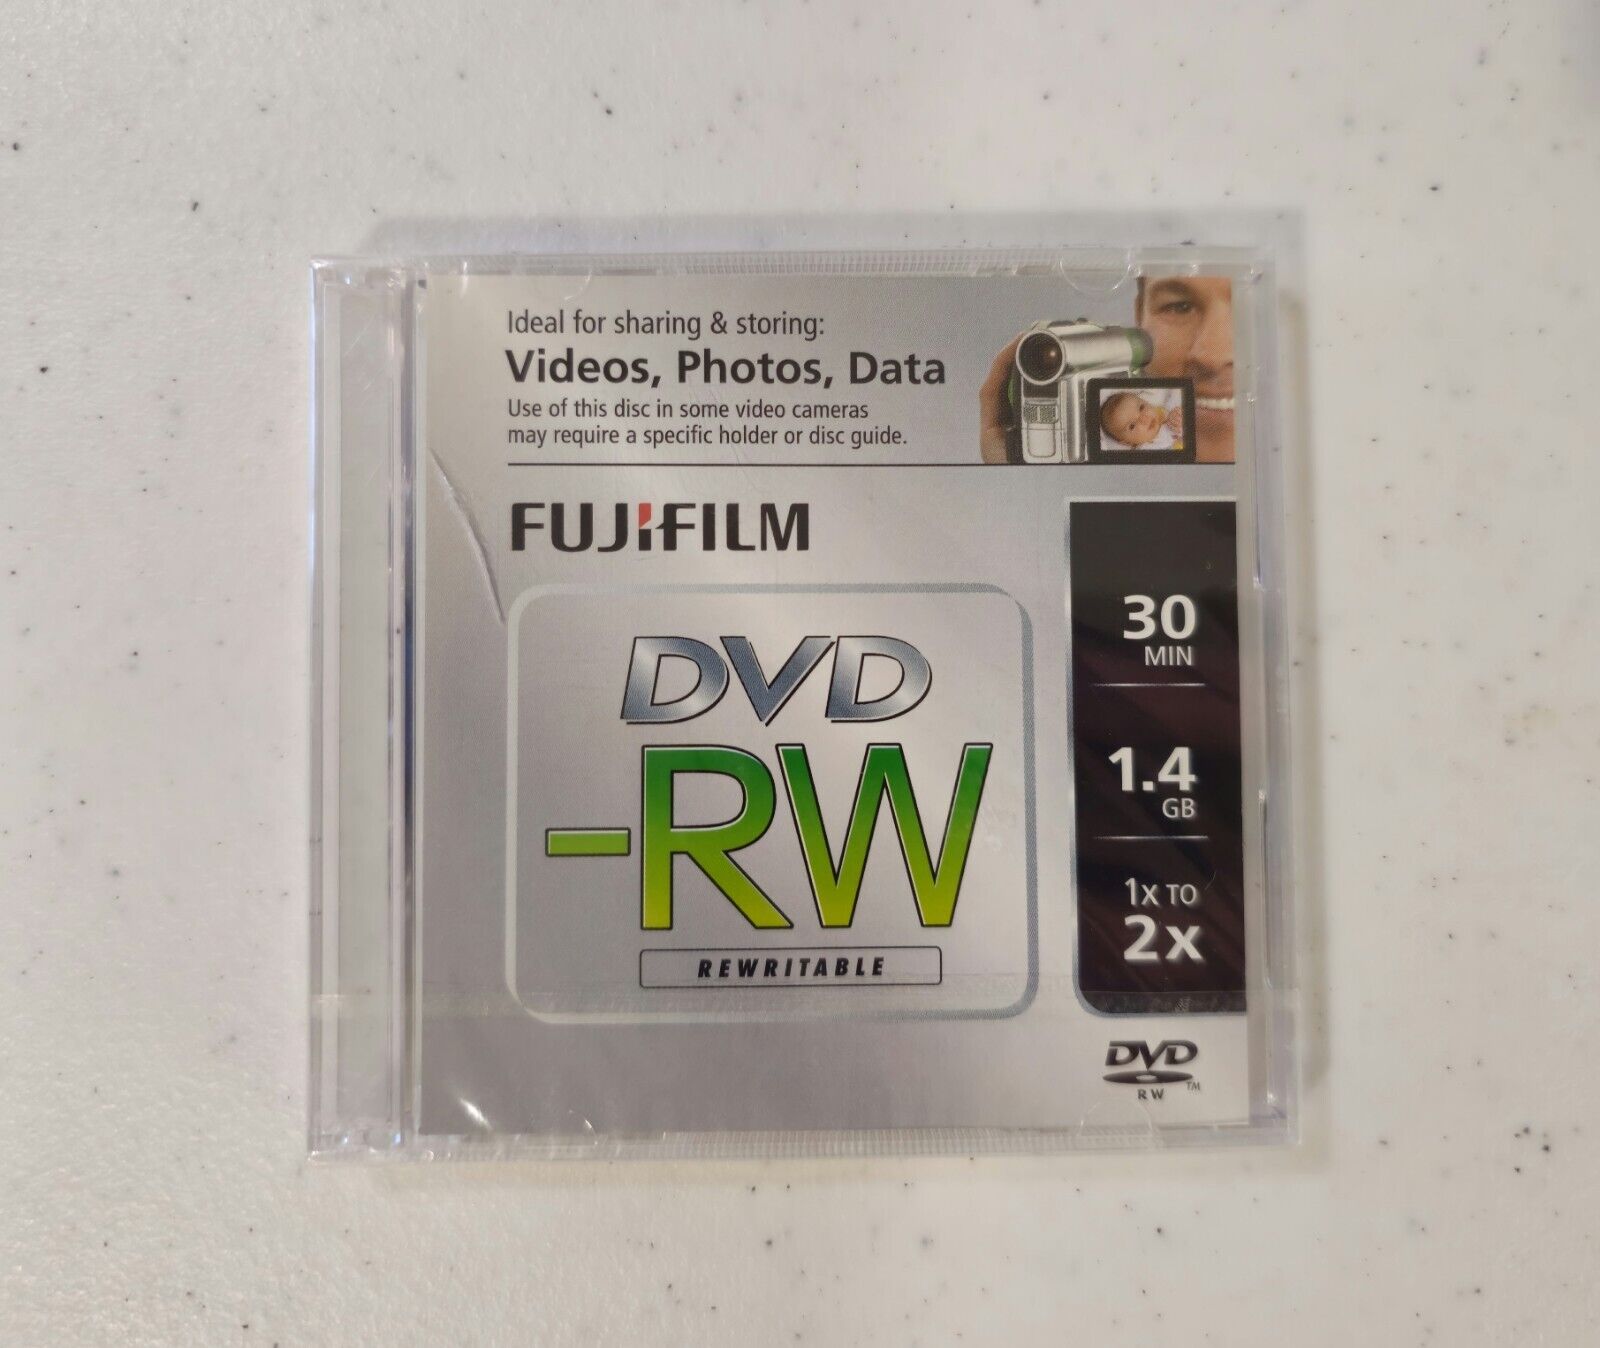 1x Fujifilm Media DVD+RW 1.4GB 30 Min Disc BRAND NEW